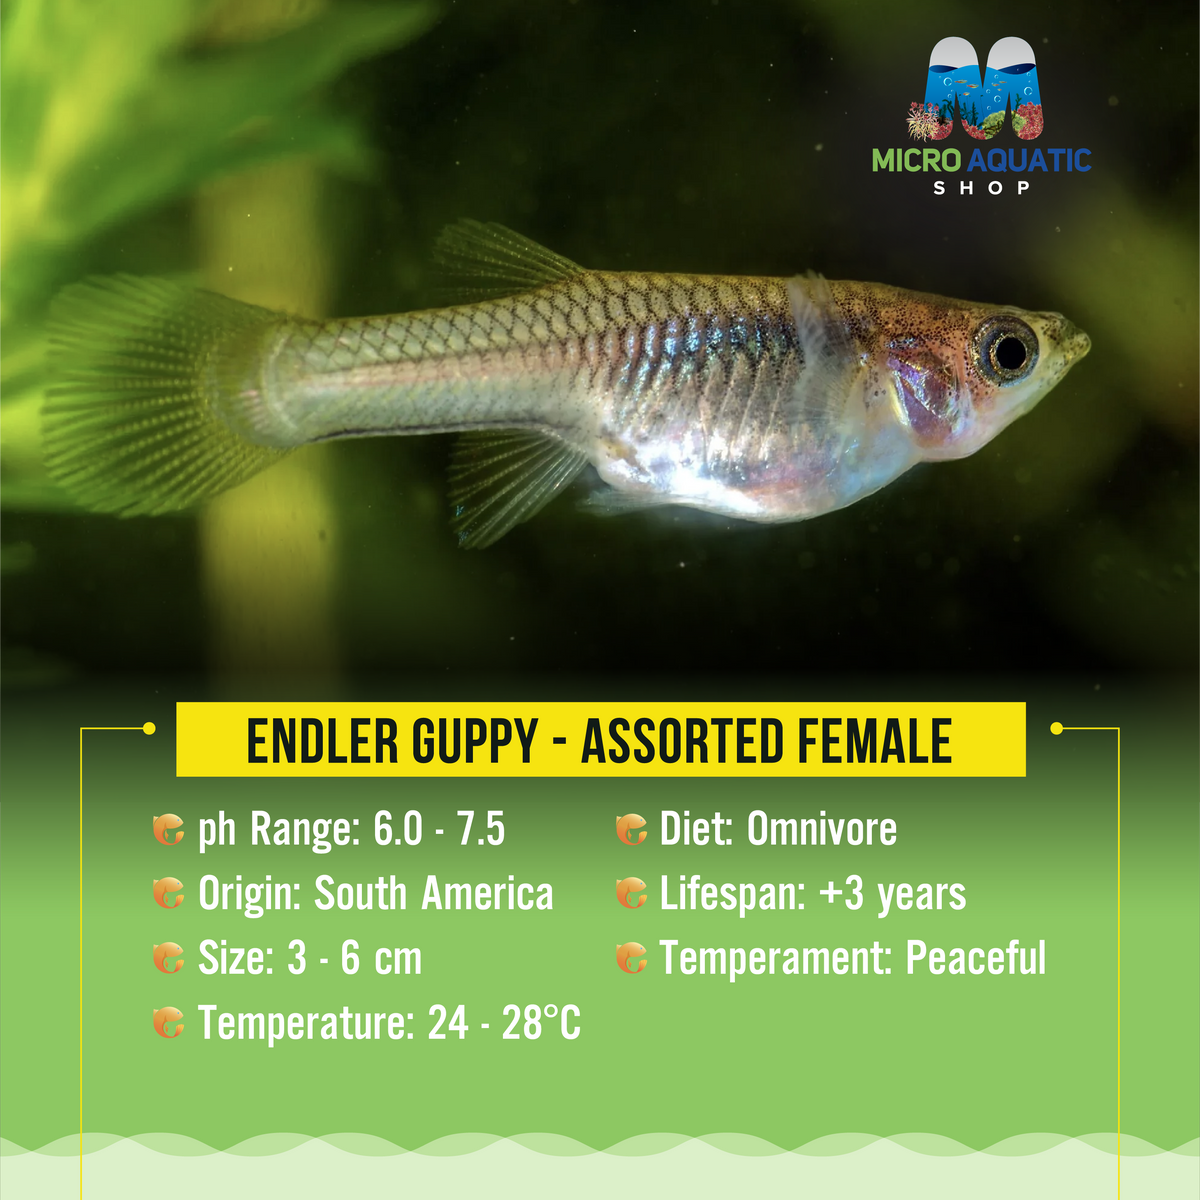 Endler Guppy - Assorted Female